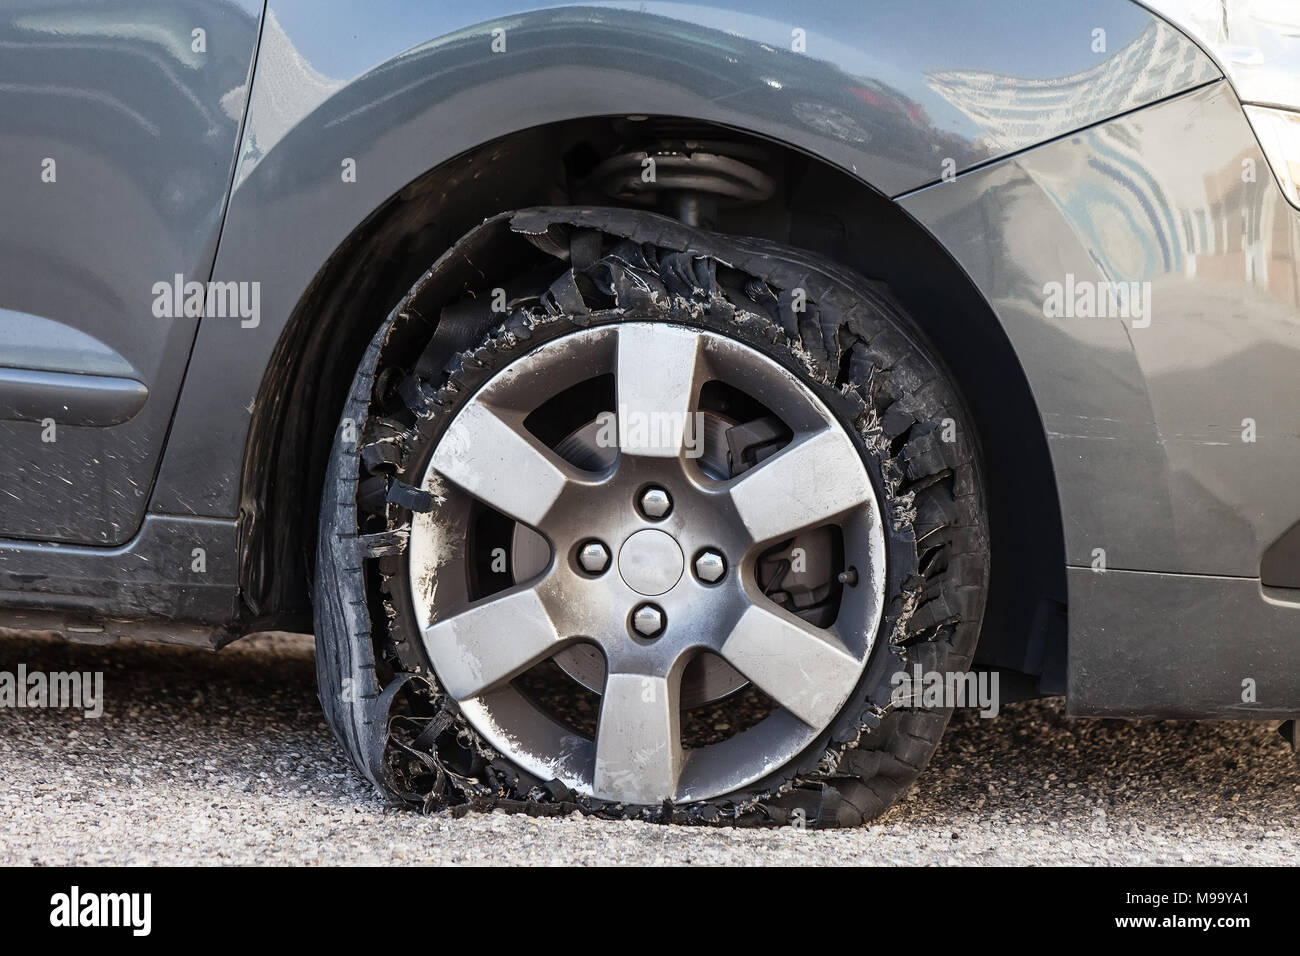 Sie zerstörte Reifen geblasen mit explodierte, geschreddert und beschädigte Gummi auf modernem SUV Automobil. Flache flache Reifen auf einer Leichtmetallfelge, riss öffnen Stockfoto